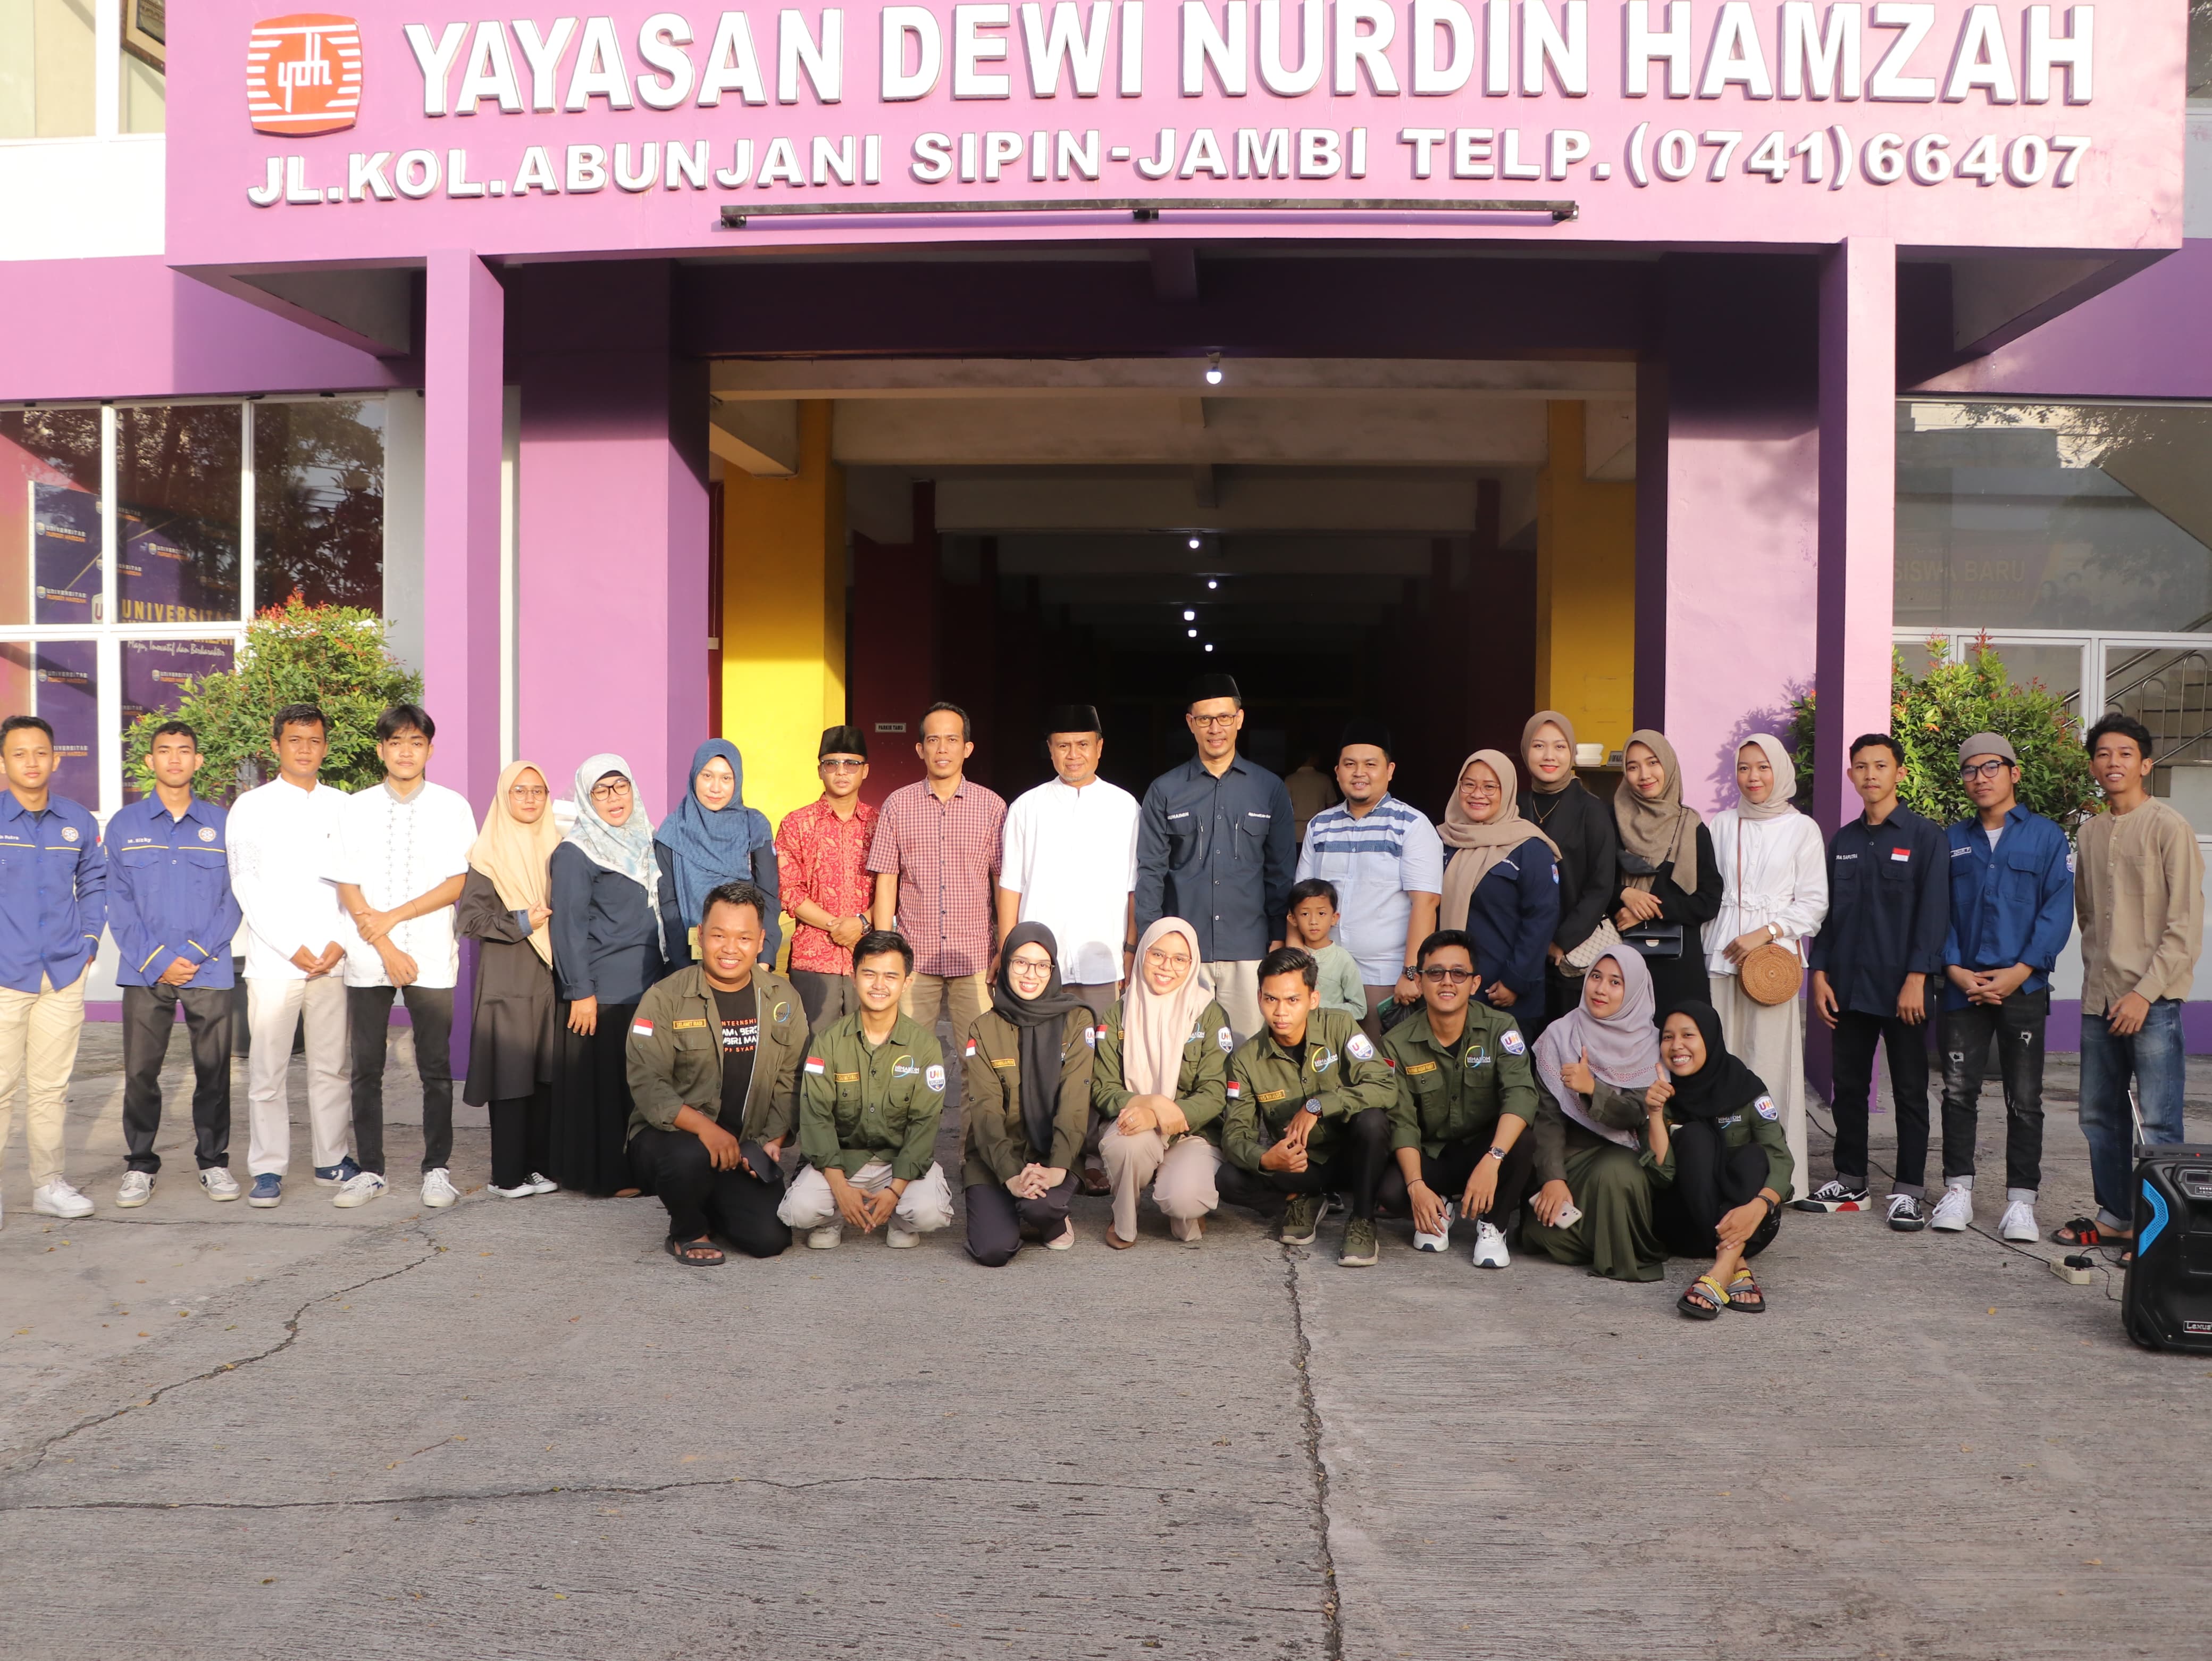 Himakom Universitas Nurdin Hamzah Gelar Bukber dan Bagikan 300 Takjil ke Pengguna Jalan 